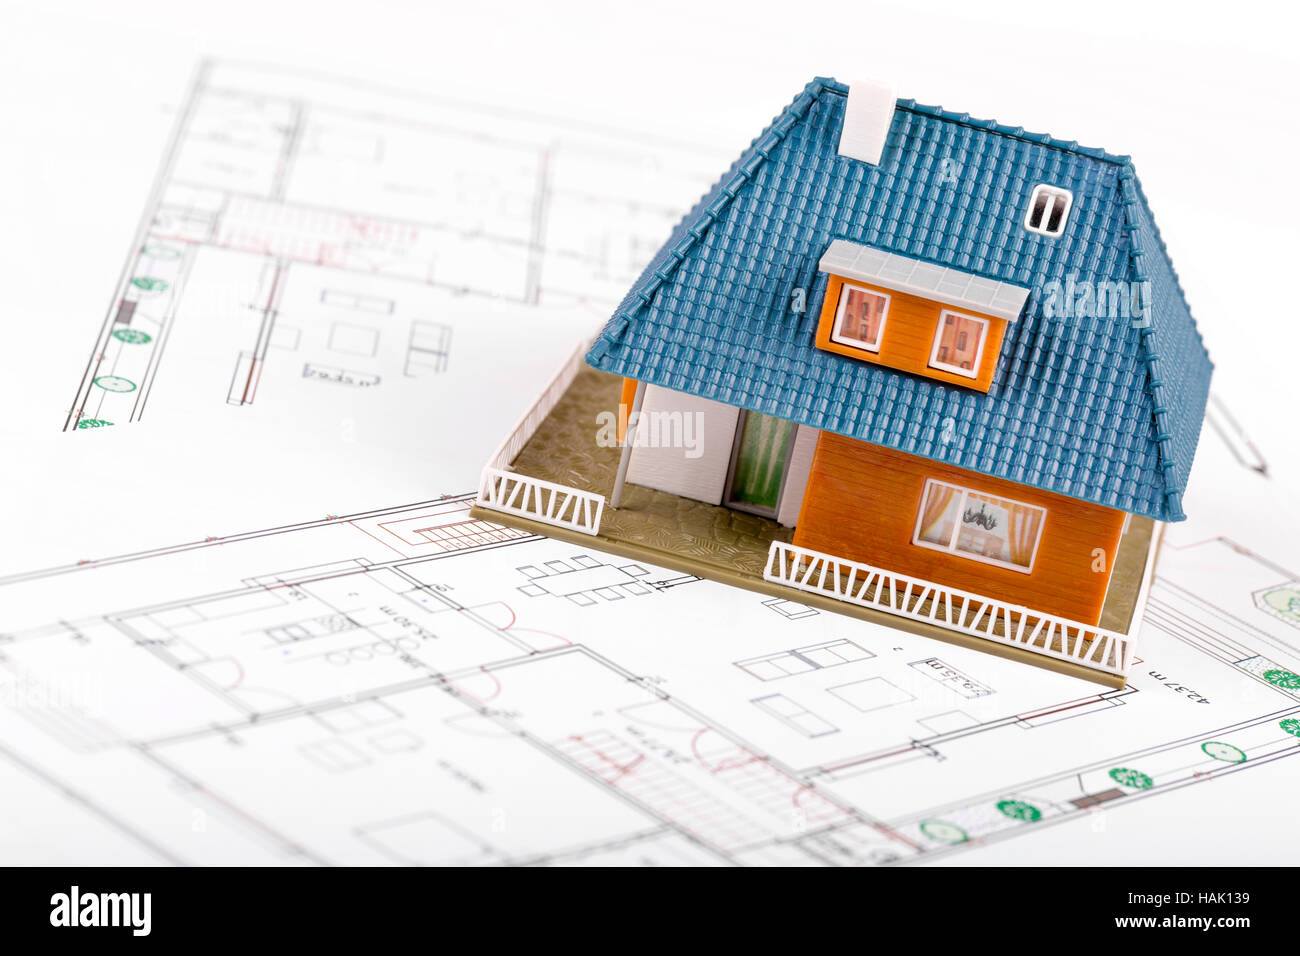 Entwicklung von Immobilien - Haus-Modell auf Blaupausen Stockfoto